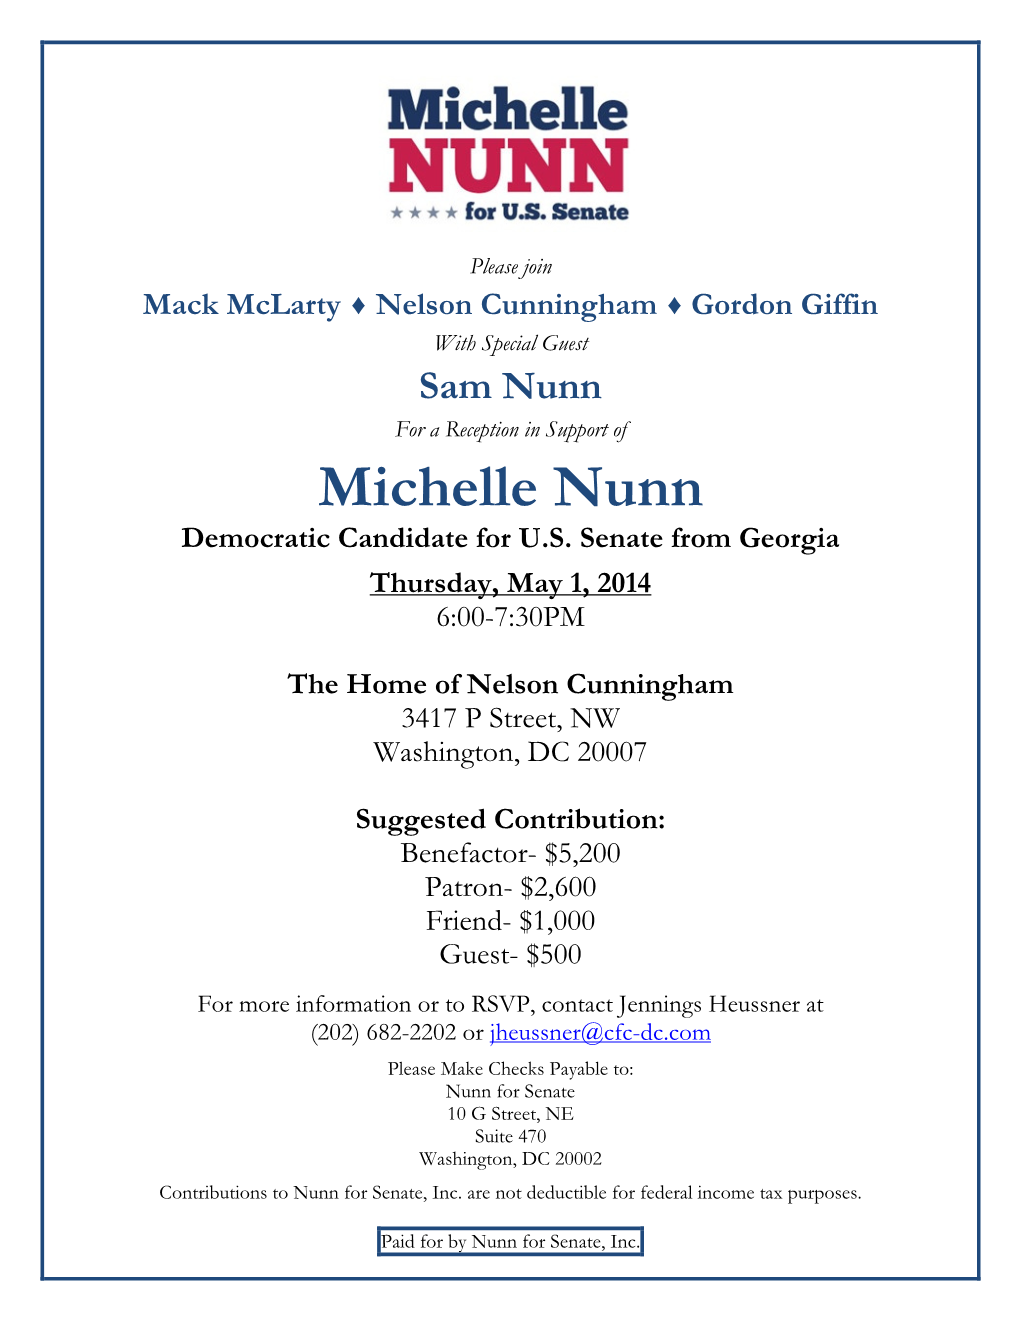 Michelle Nunn Democratic Candidate for U.S